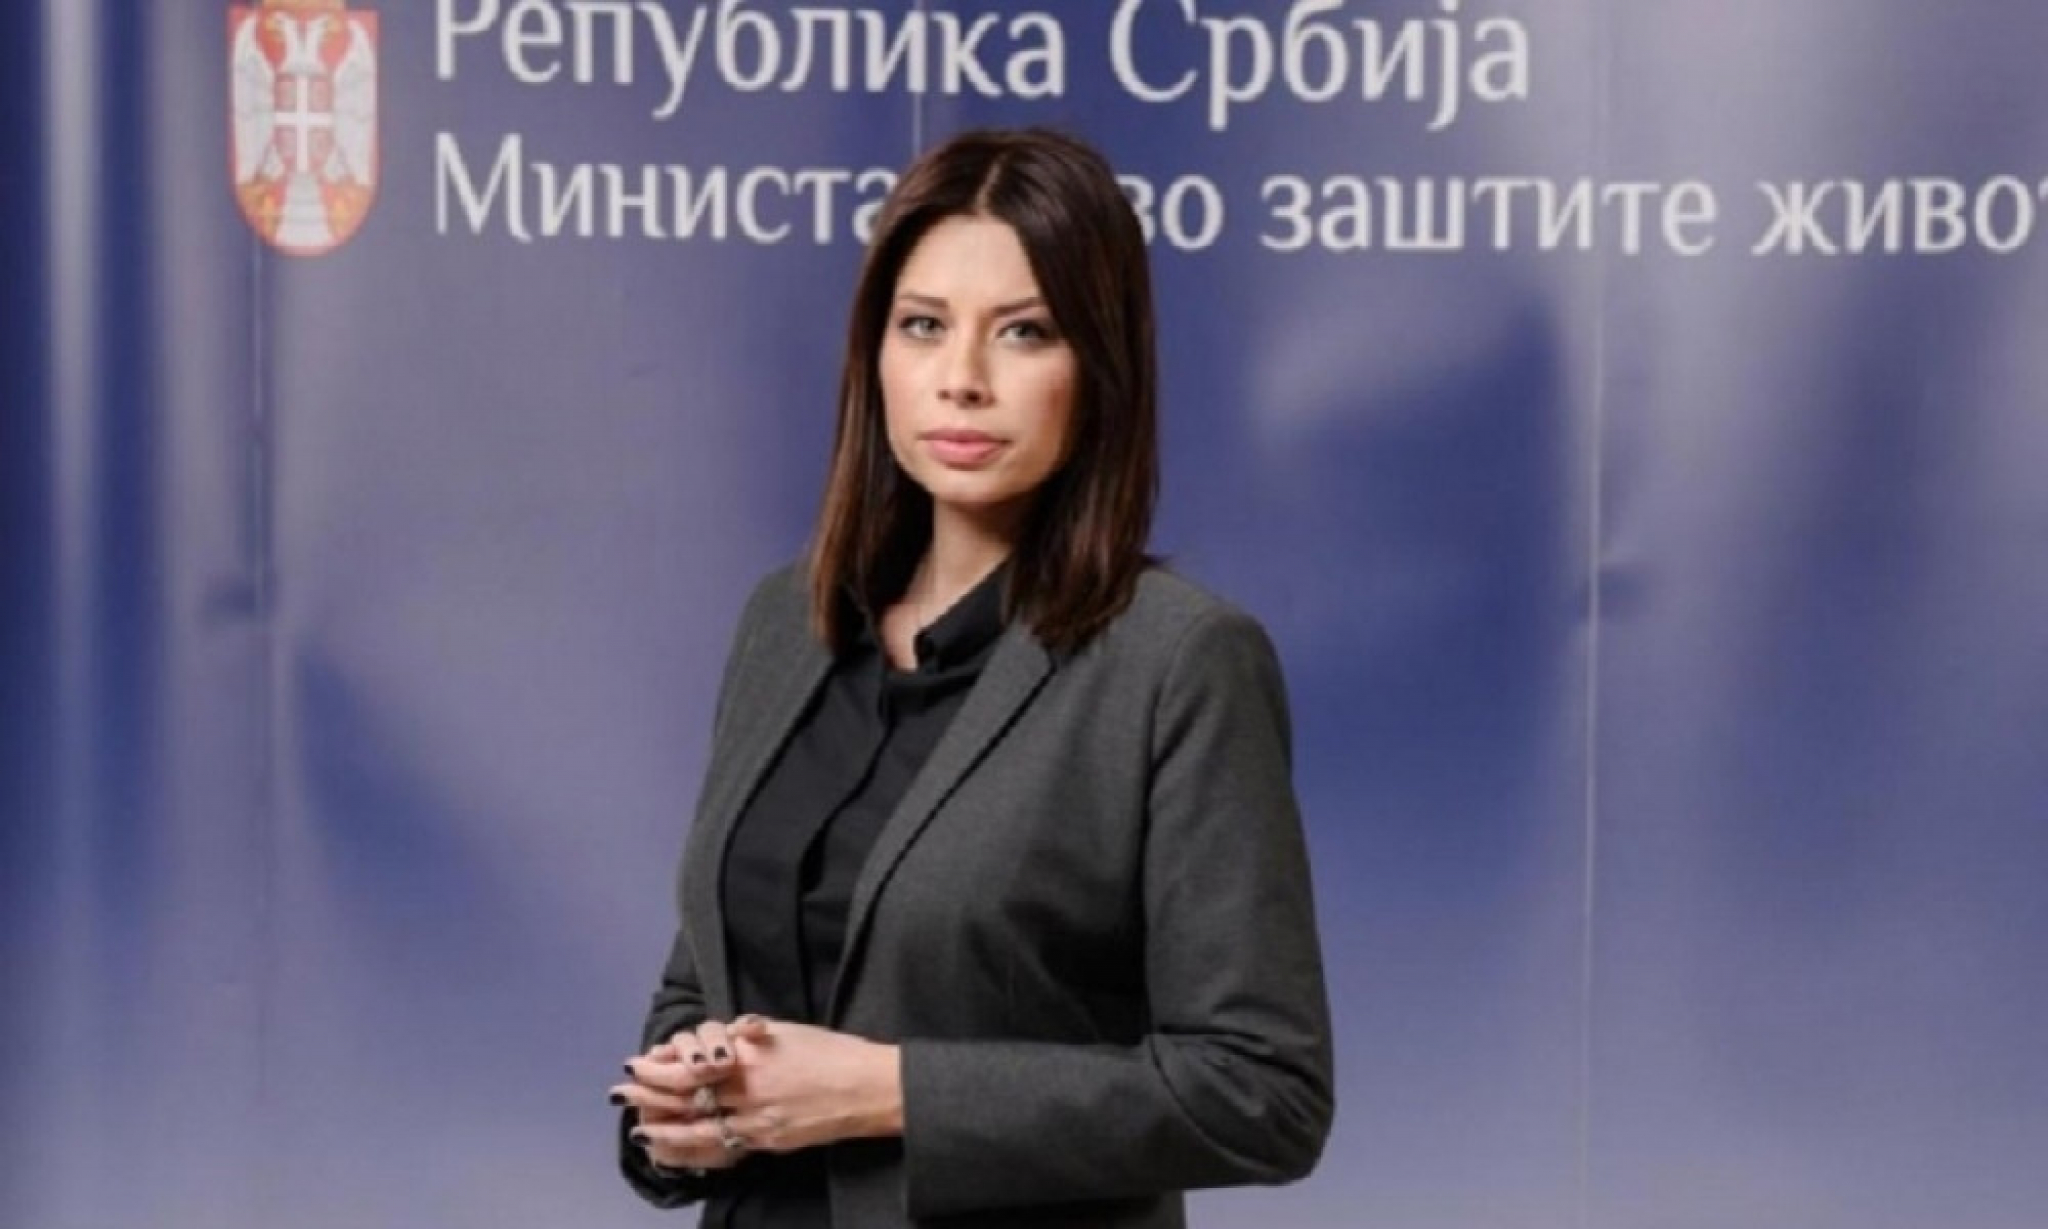 Irena Vujović